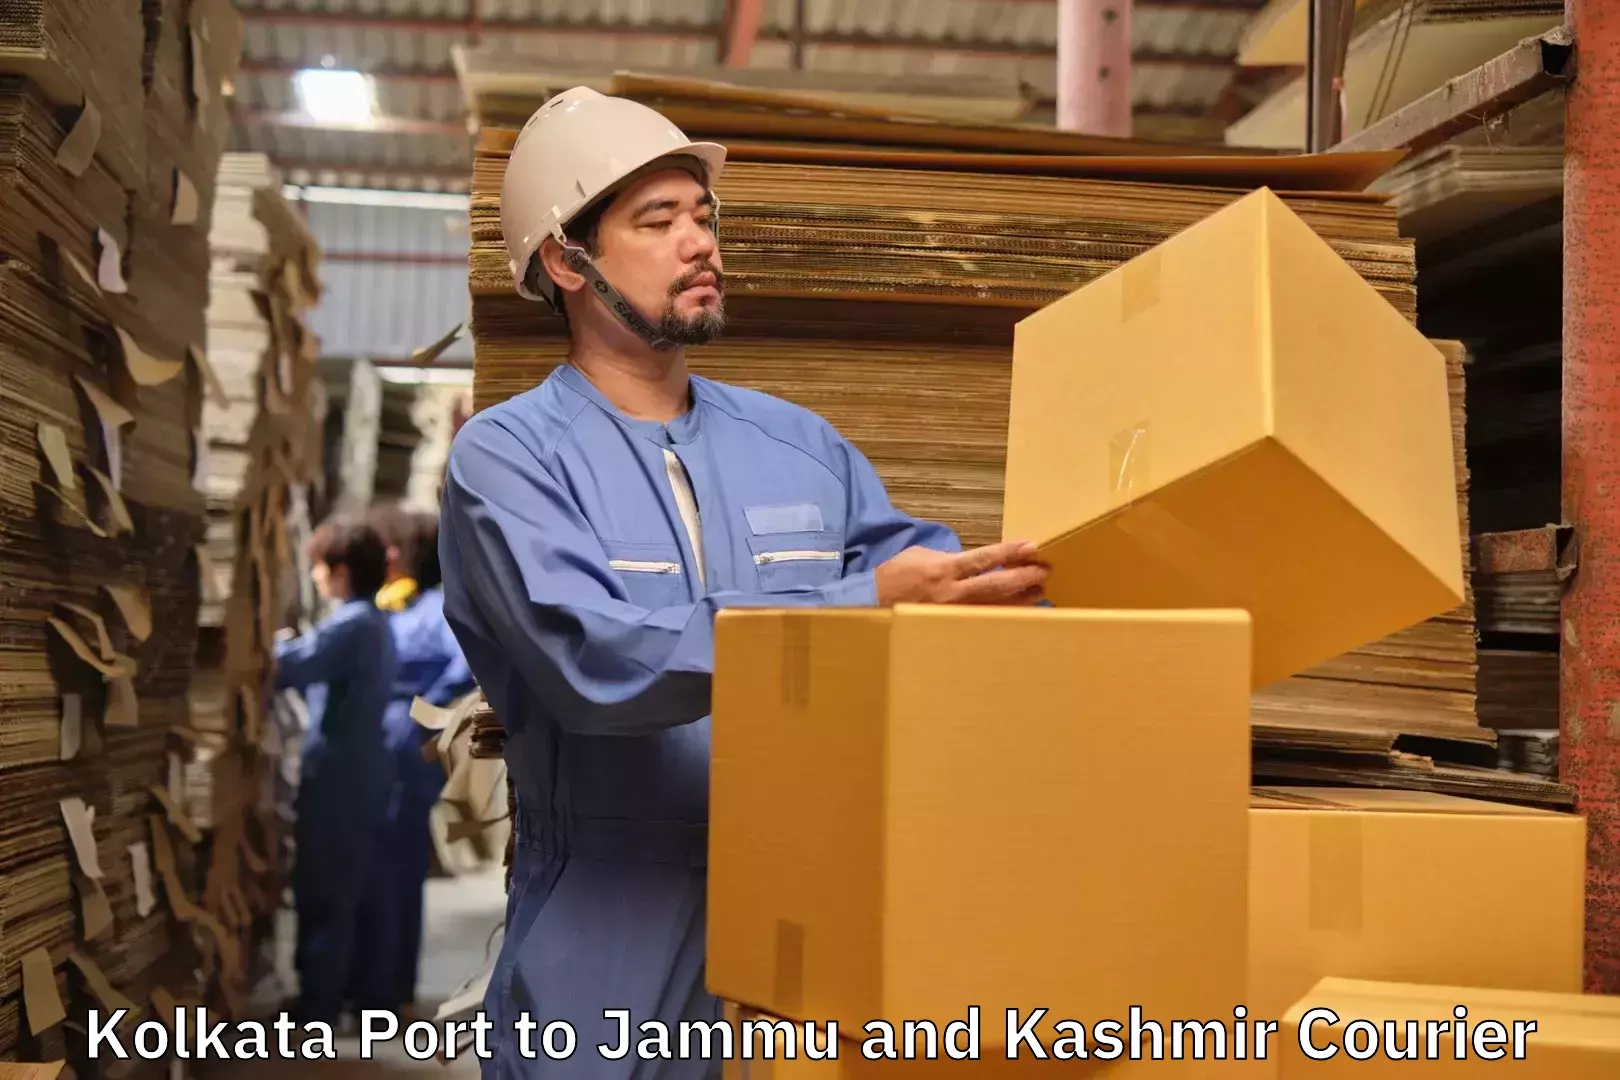 Artwork baggage courier Kolkata Port to Jakh